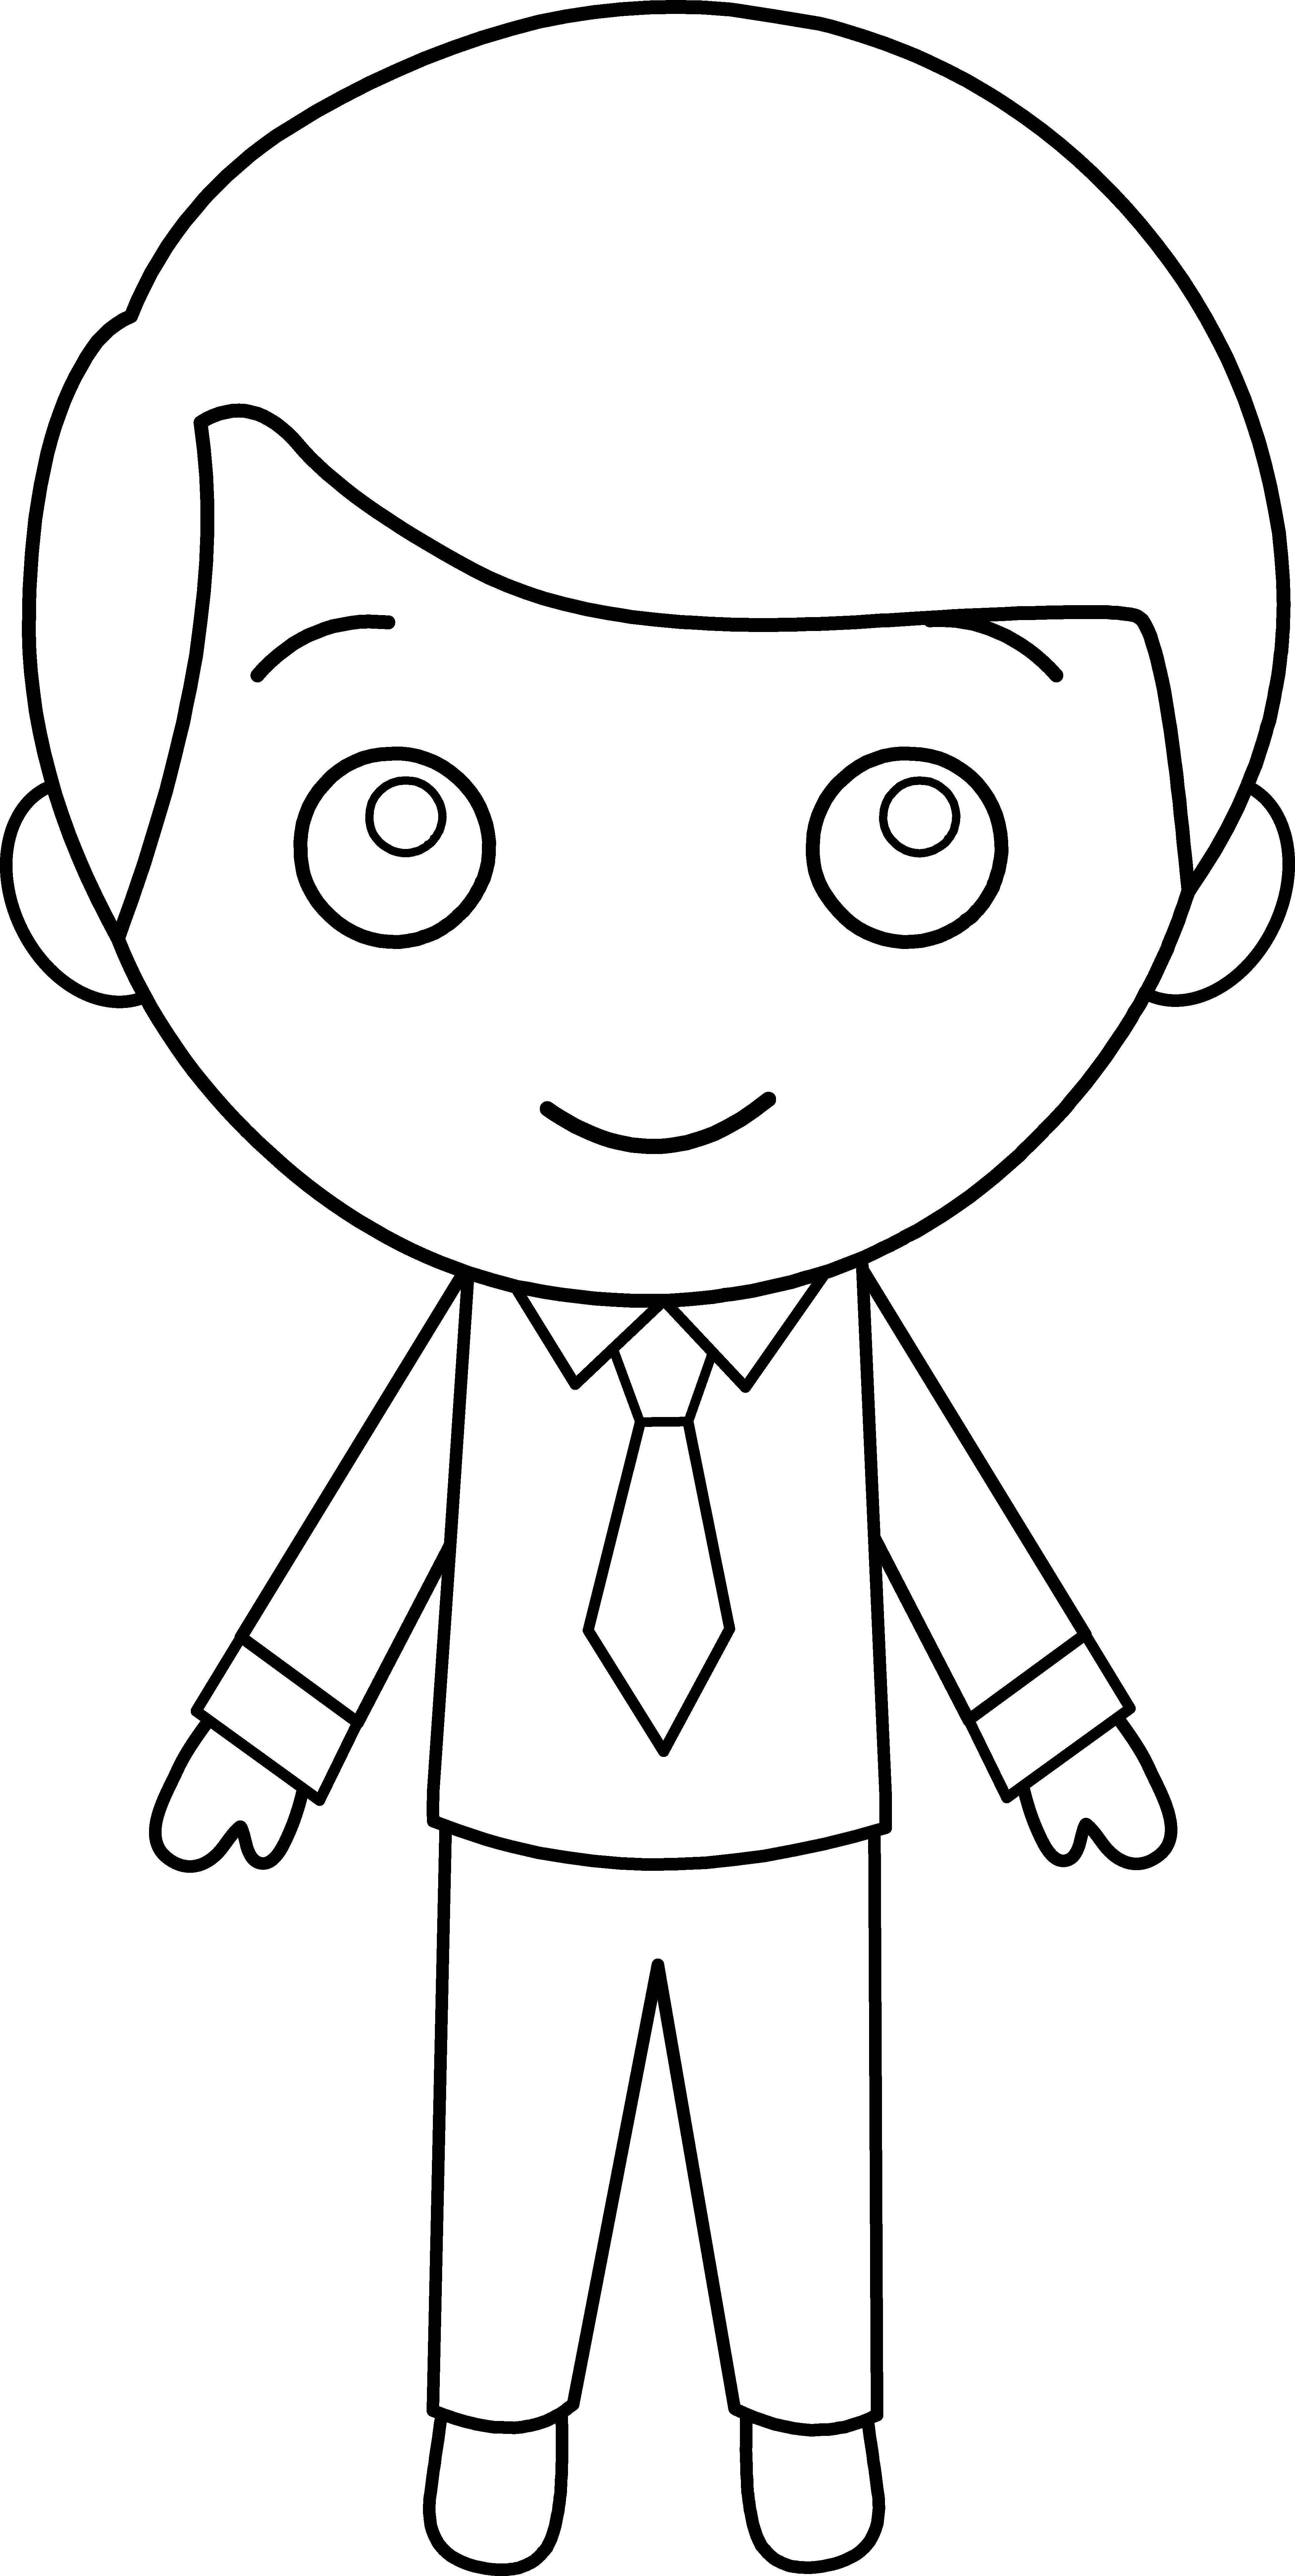 Little Guy in Suit Line Art - Free Clip Art